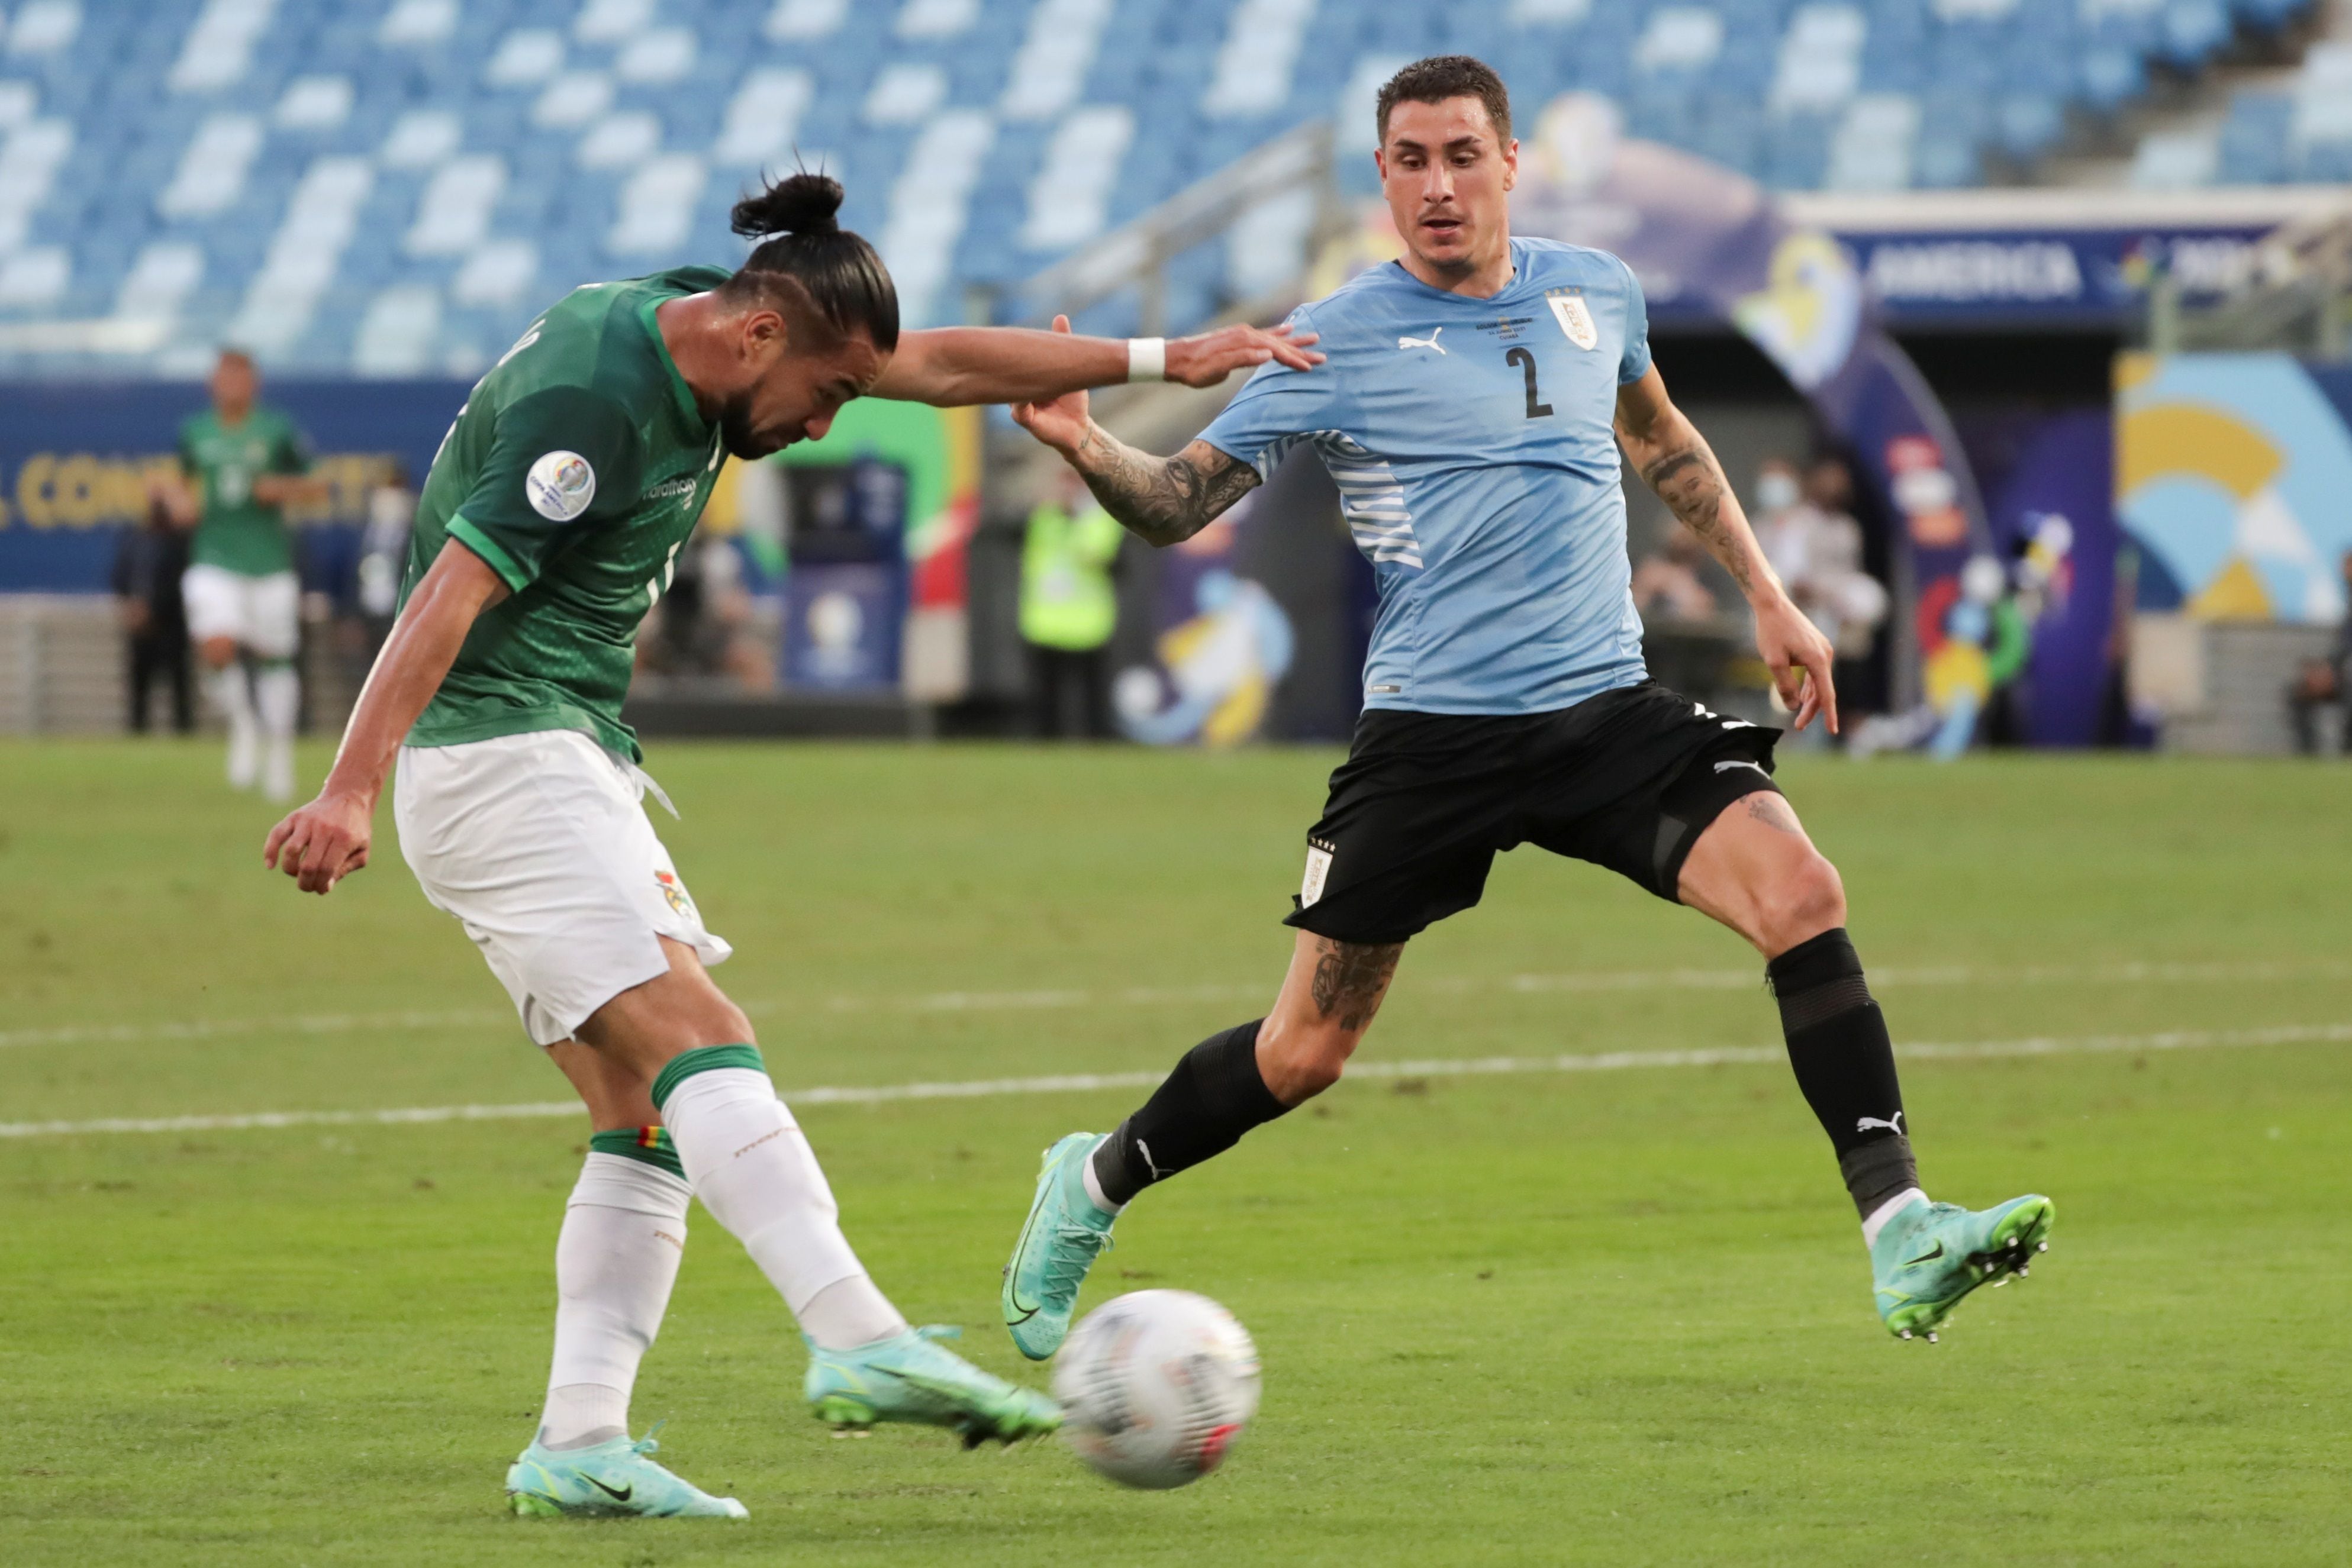 Uruguay aplastó a Bolivia y sigue firme en las Eliminatorias - Olé